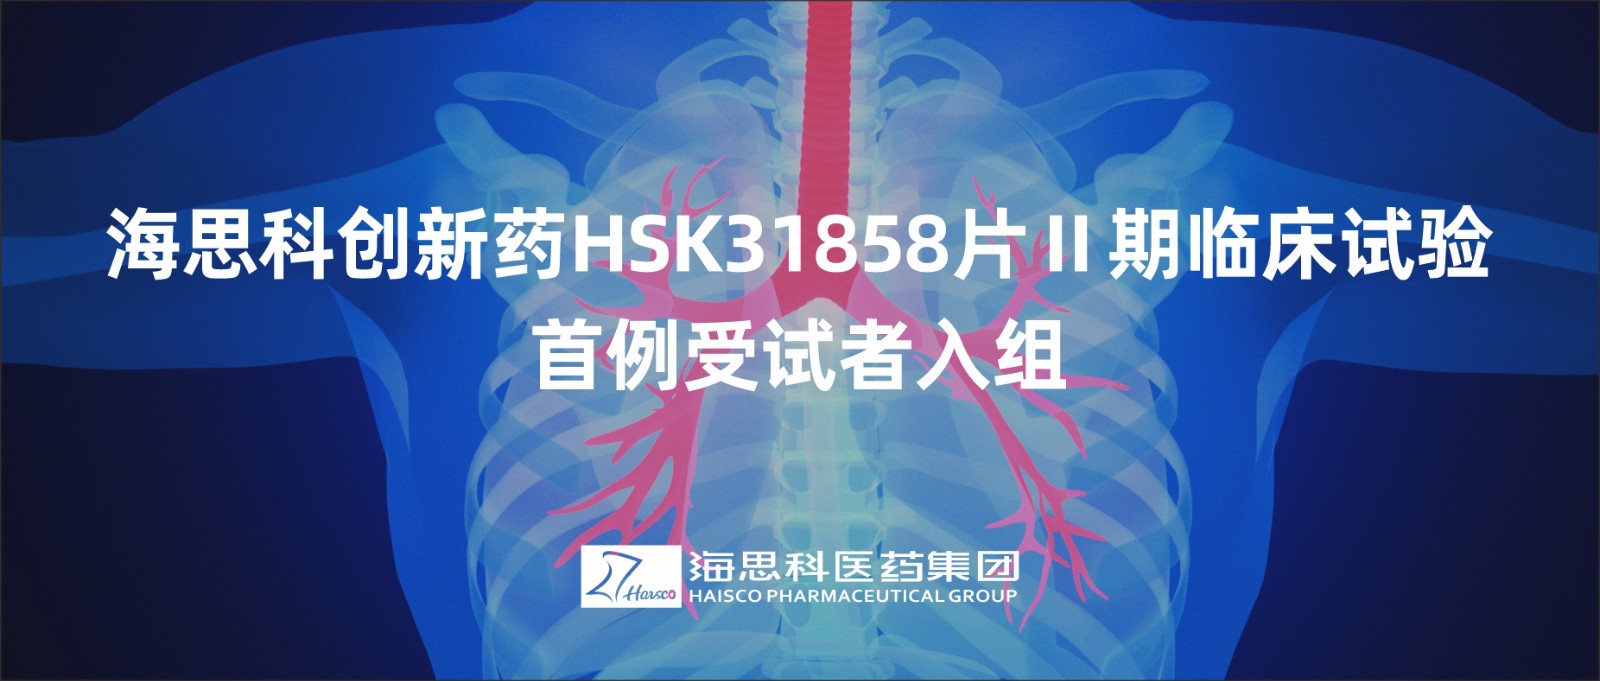 永利总站创新药HSK31858片Ⅱ期临床试验首例受试者入组